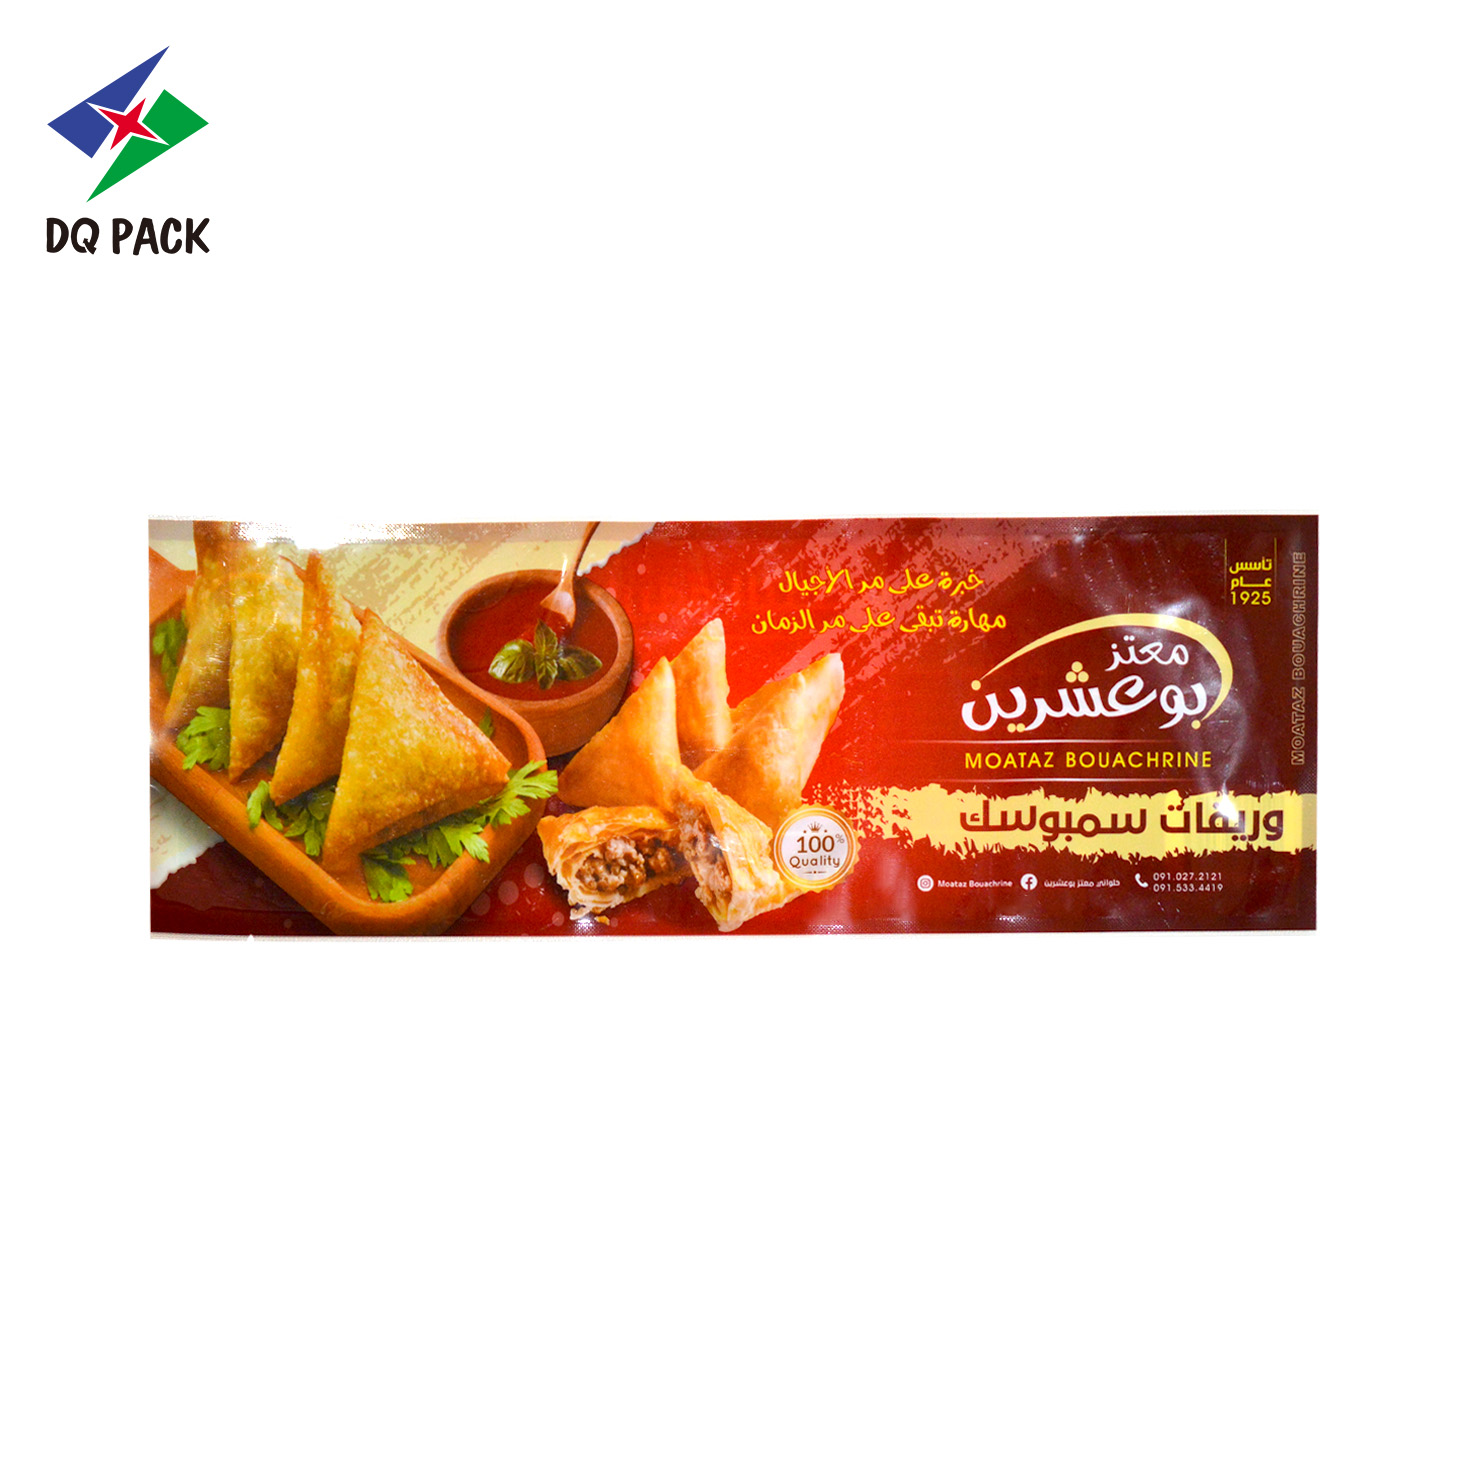 DQ PACK Пищевой пакет с трехсторонним уплотнением для упаковки пищевых продуктов из ПЭТ Майларовый мешок